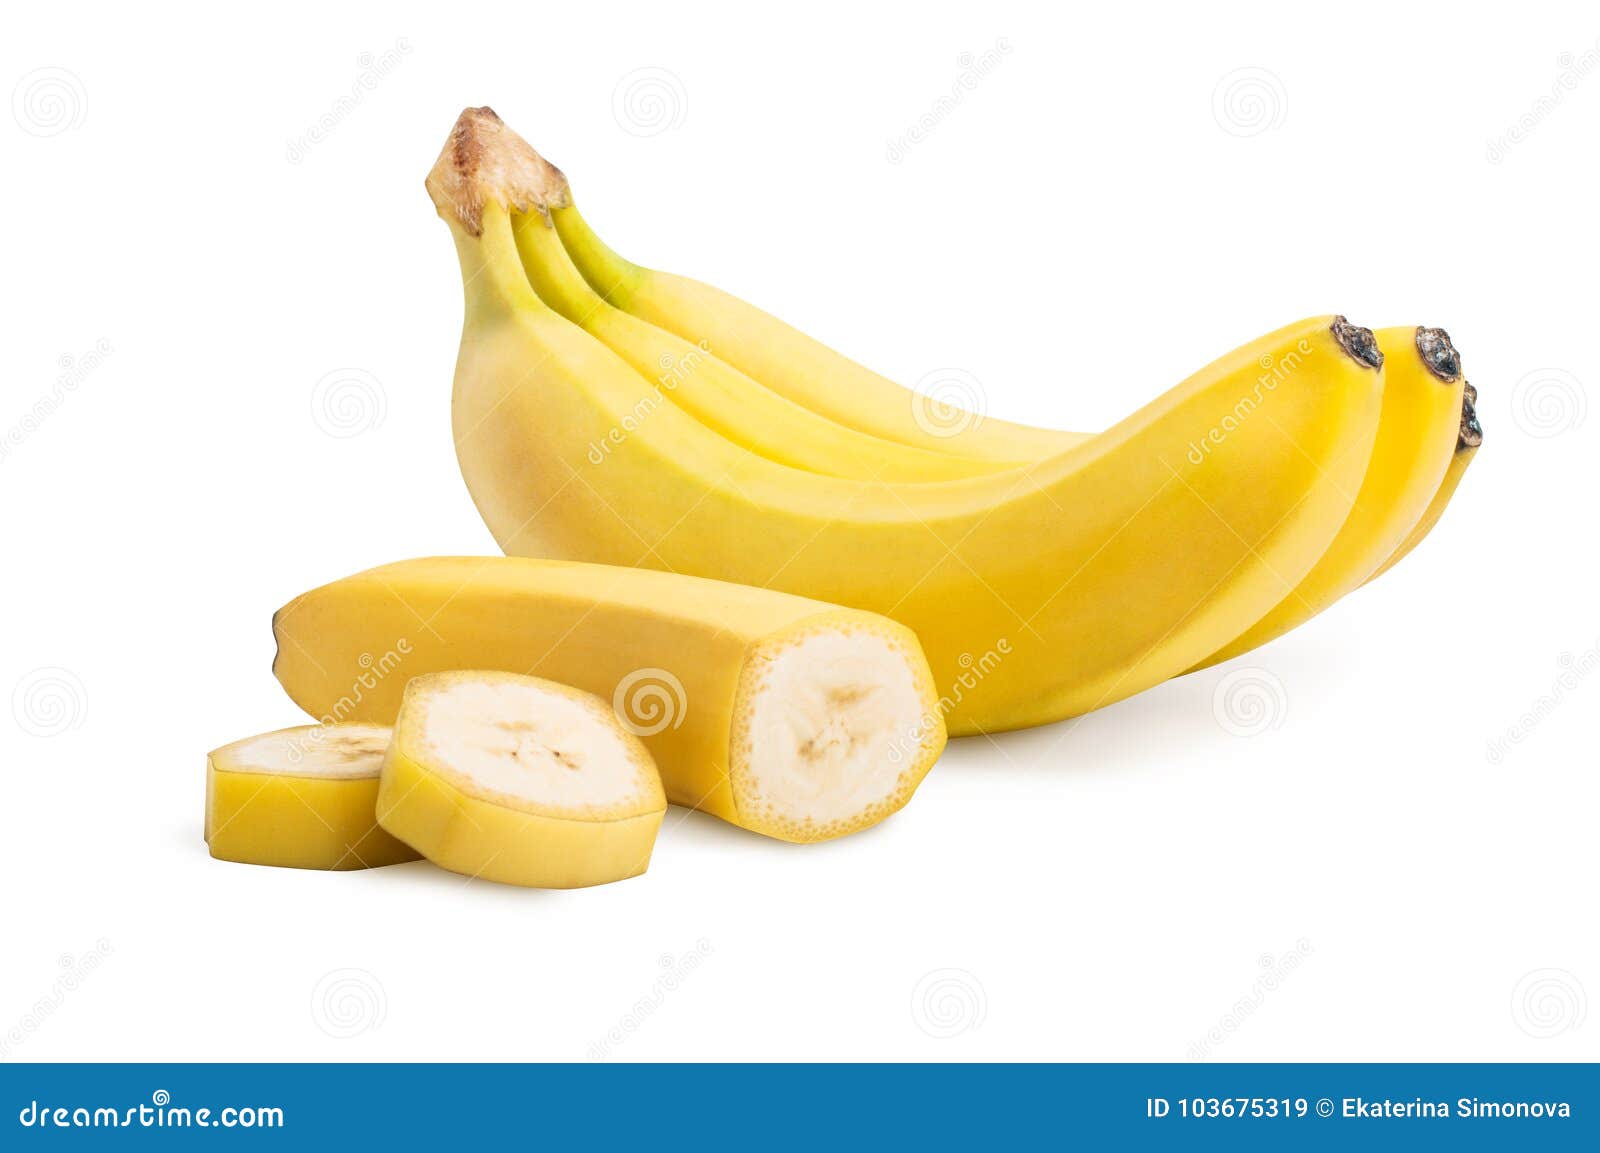 bunch of banana fruits and cut bananas 